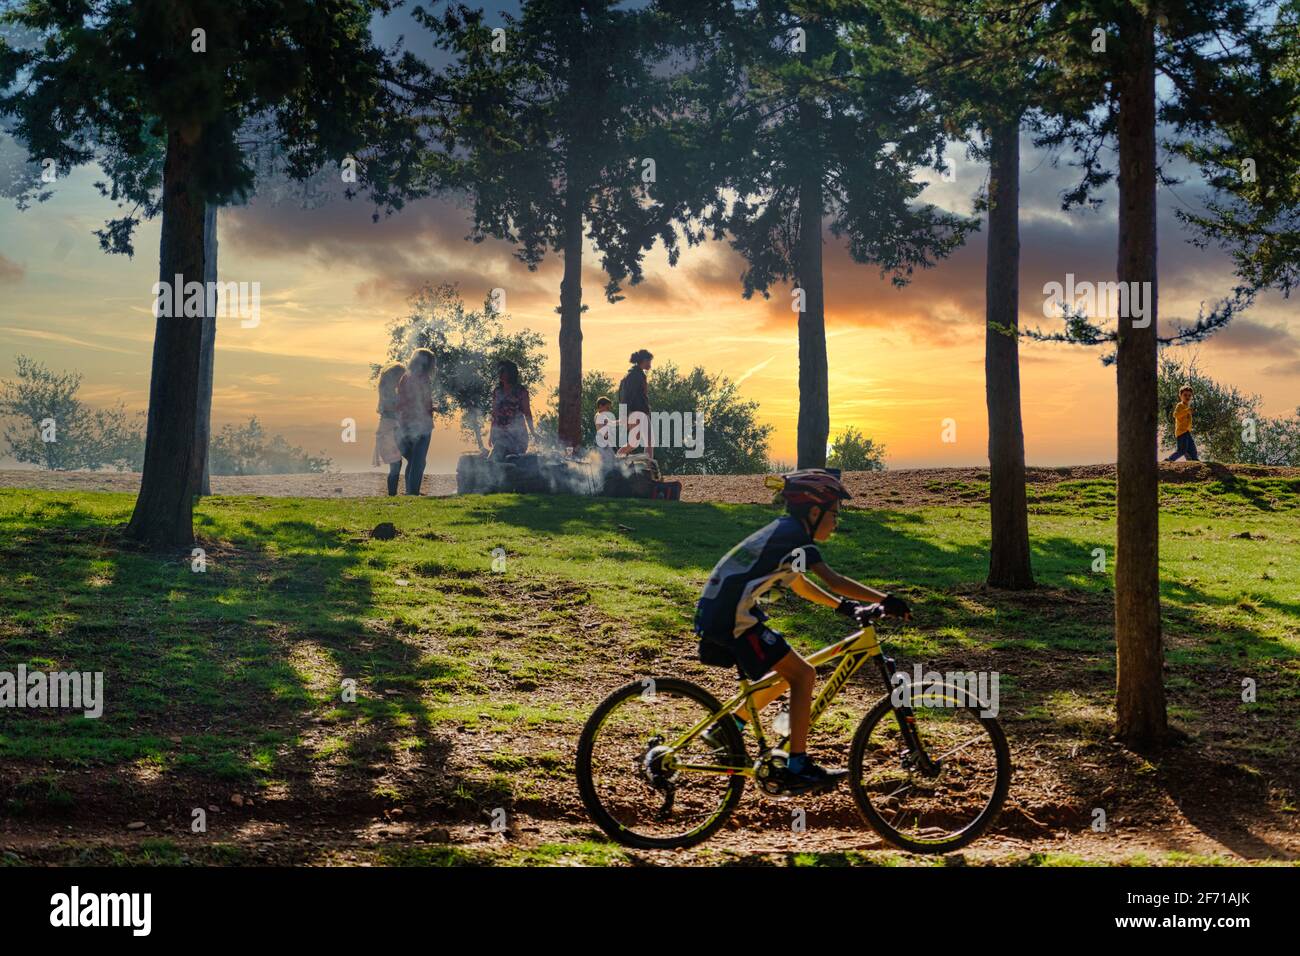 GRANADA, ANDALUSIEN, SPANIEN. NOVEMBER 2020. Menschen, die im Wald grillen, während ein junger Radfahrer bei Sonnenuntergang Sport macht. Stockfoto